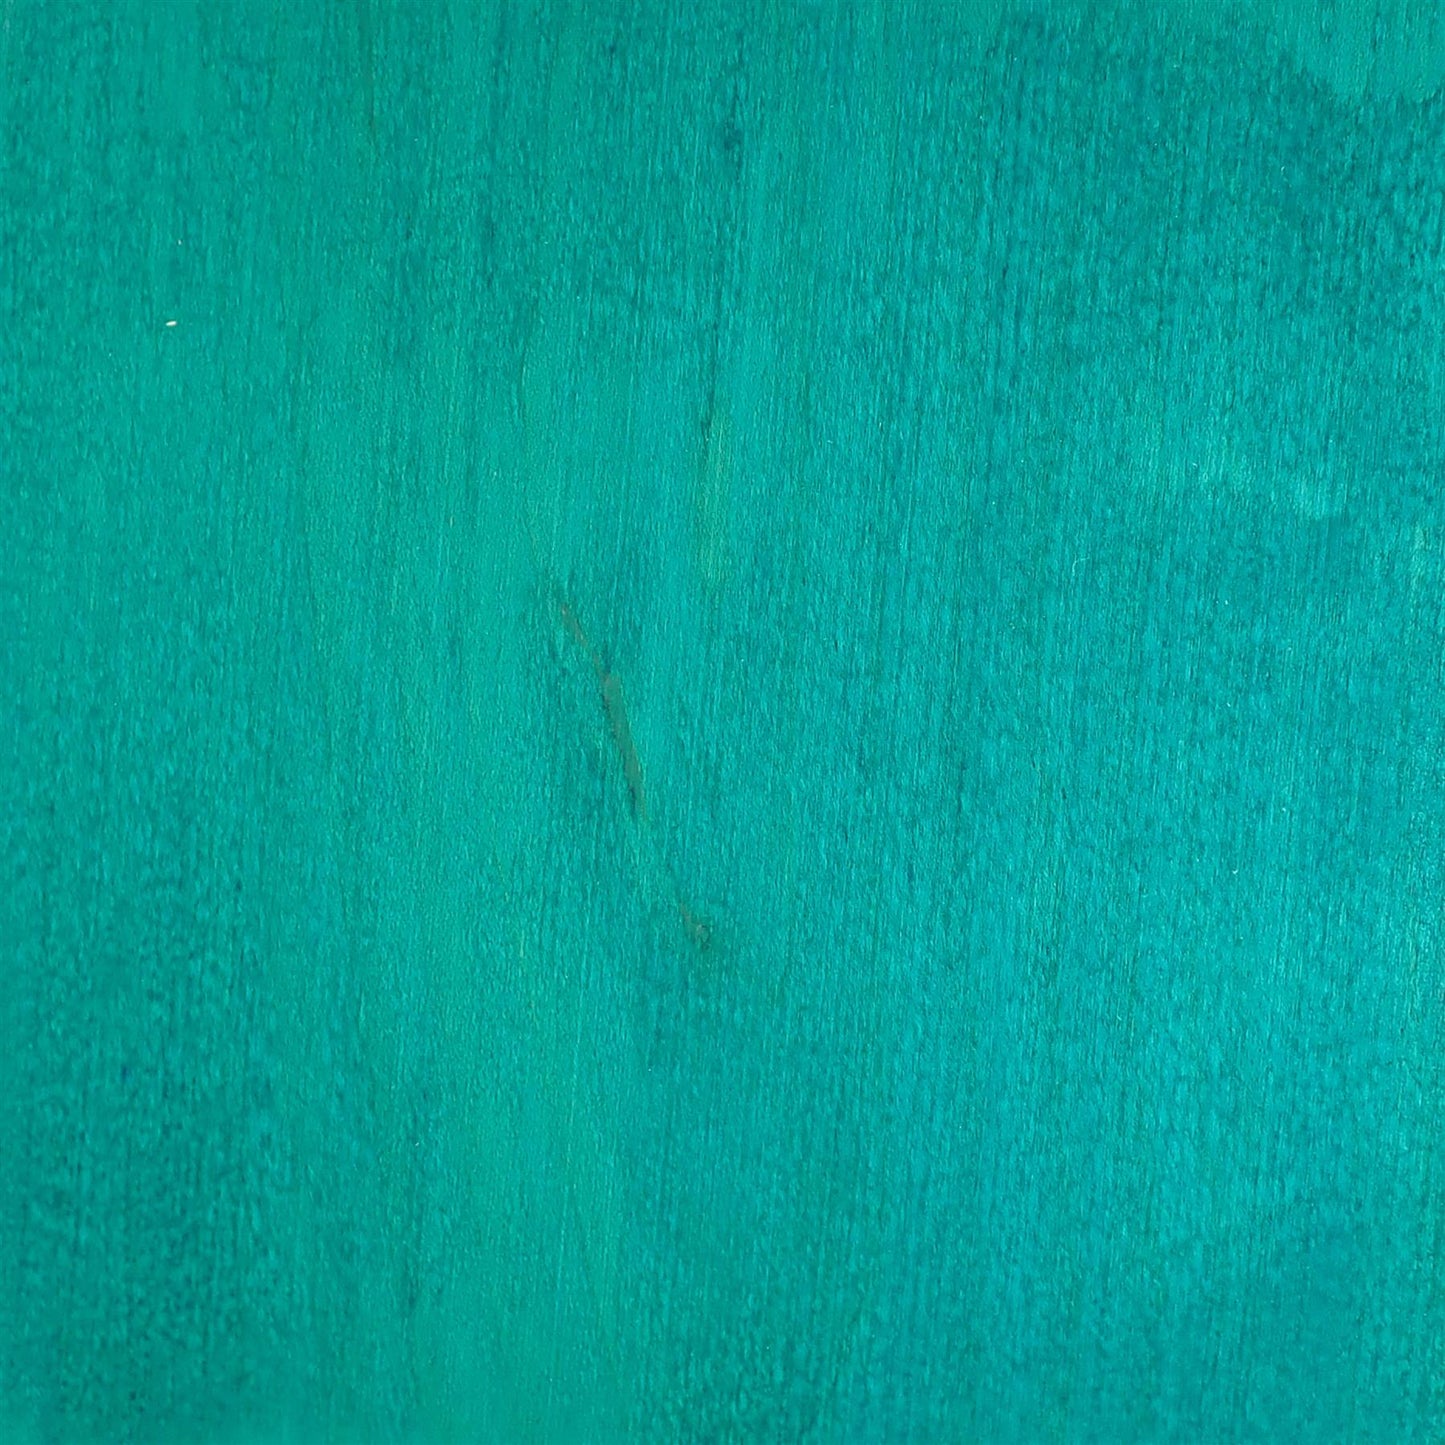 dartfords Emerald Green Alcohol Soluble Aniline Wood Dye Powder - 28g 1Oz